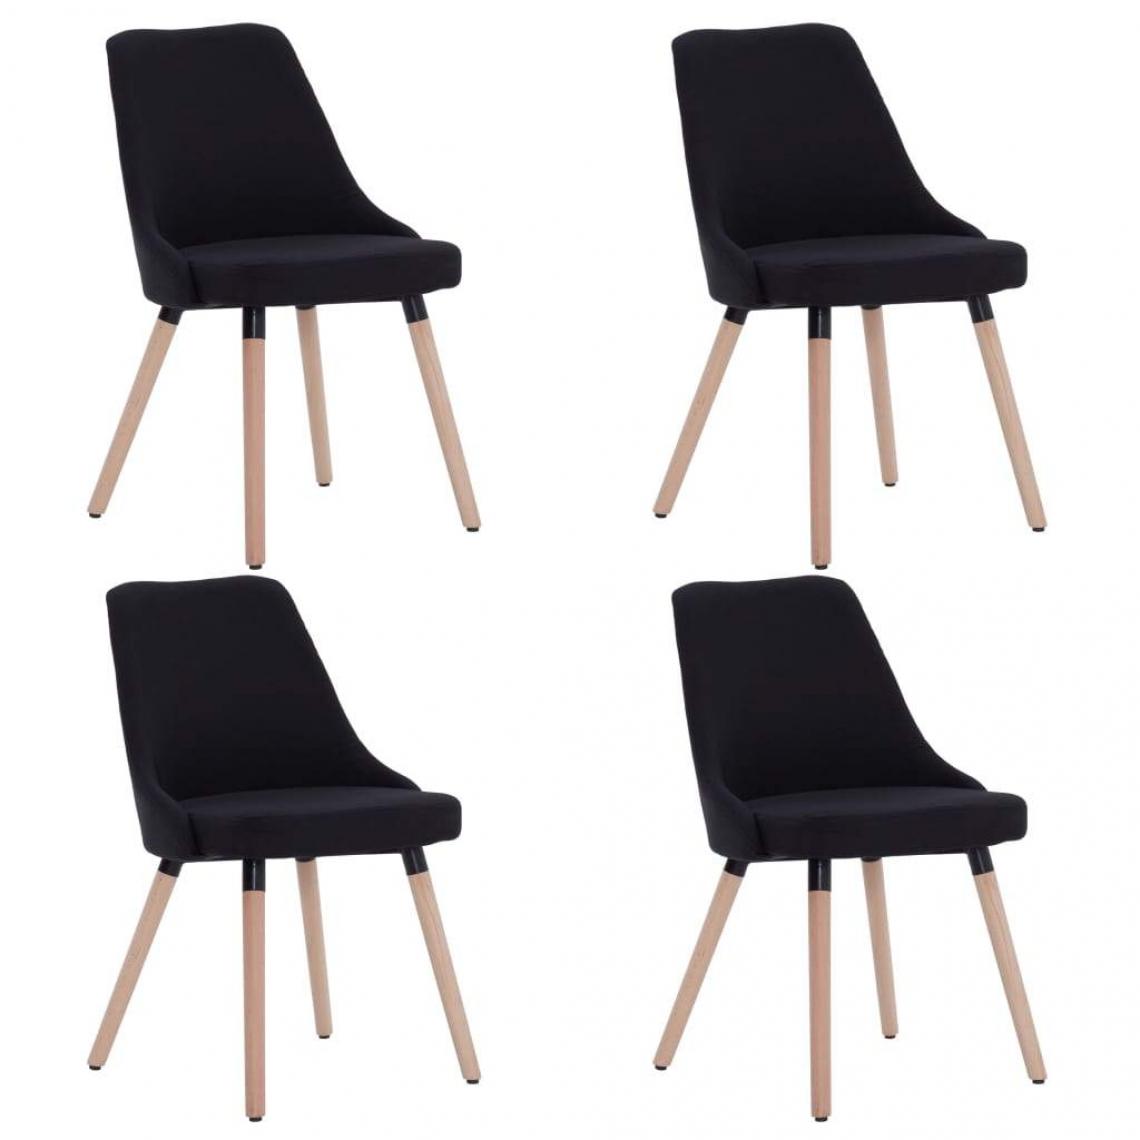 Decoshop26 - Lot de 4 chaises de salle à manger design moderne cuisine tissu noir CDS021840 - Chaises